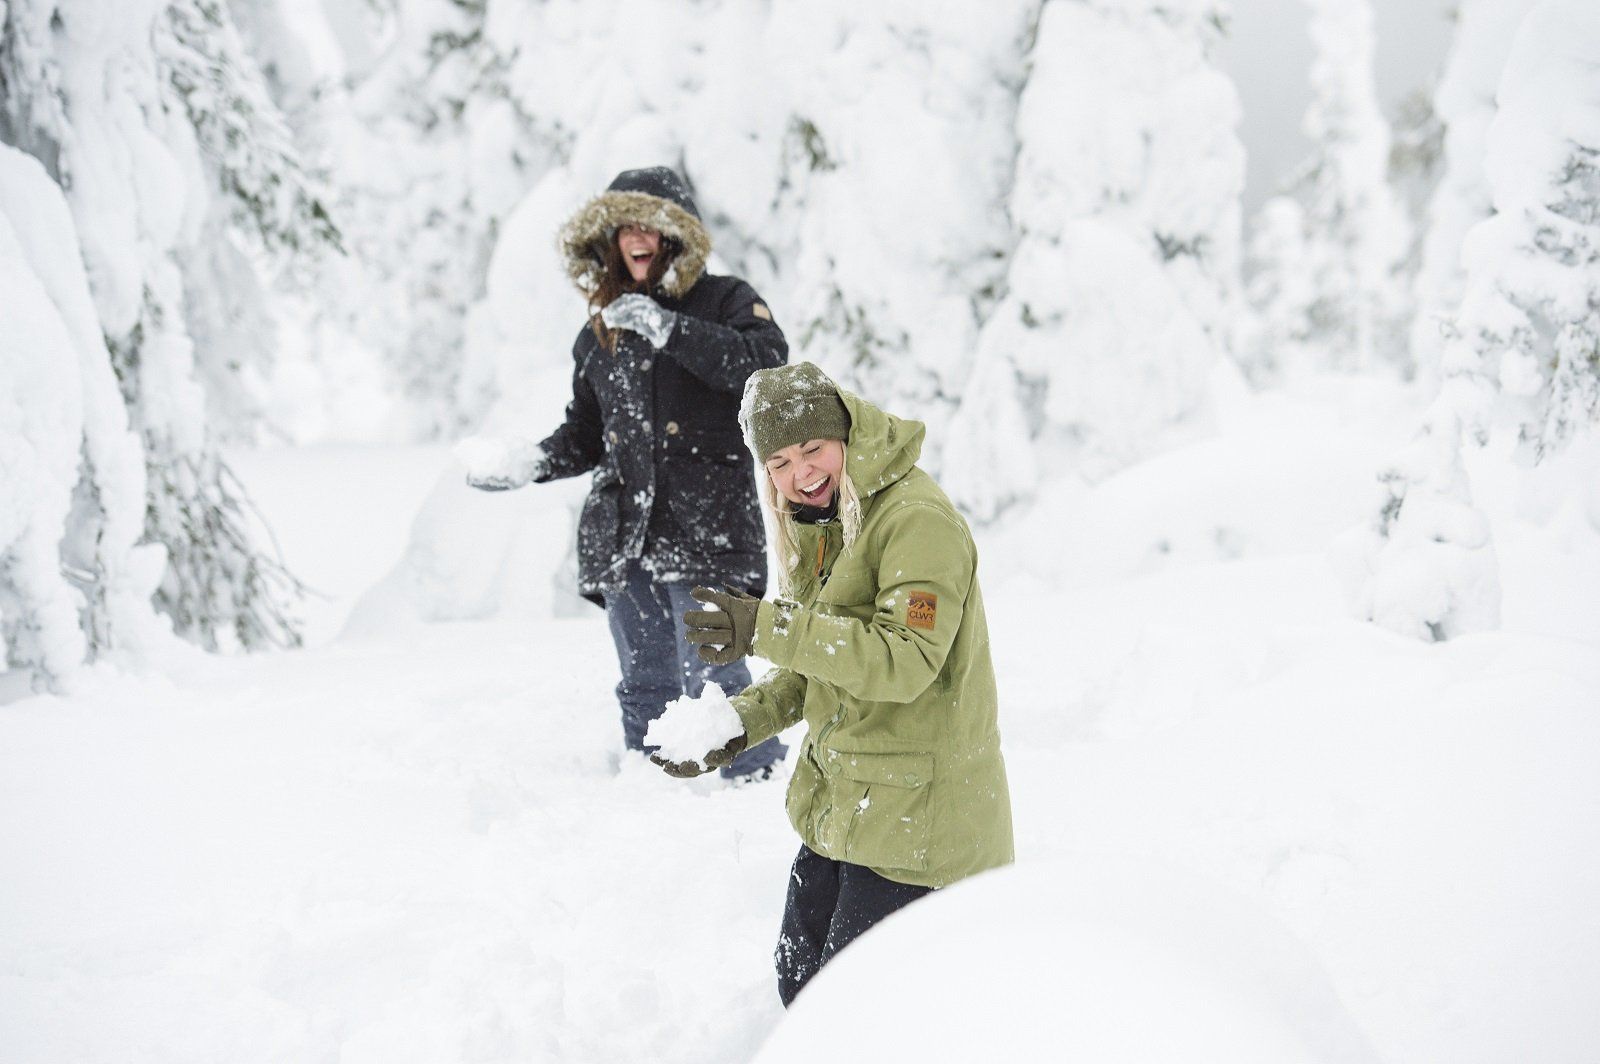 Sneeuw genoeg tijdens uw reis in de winter in Finland